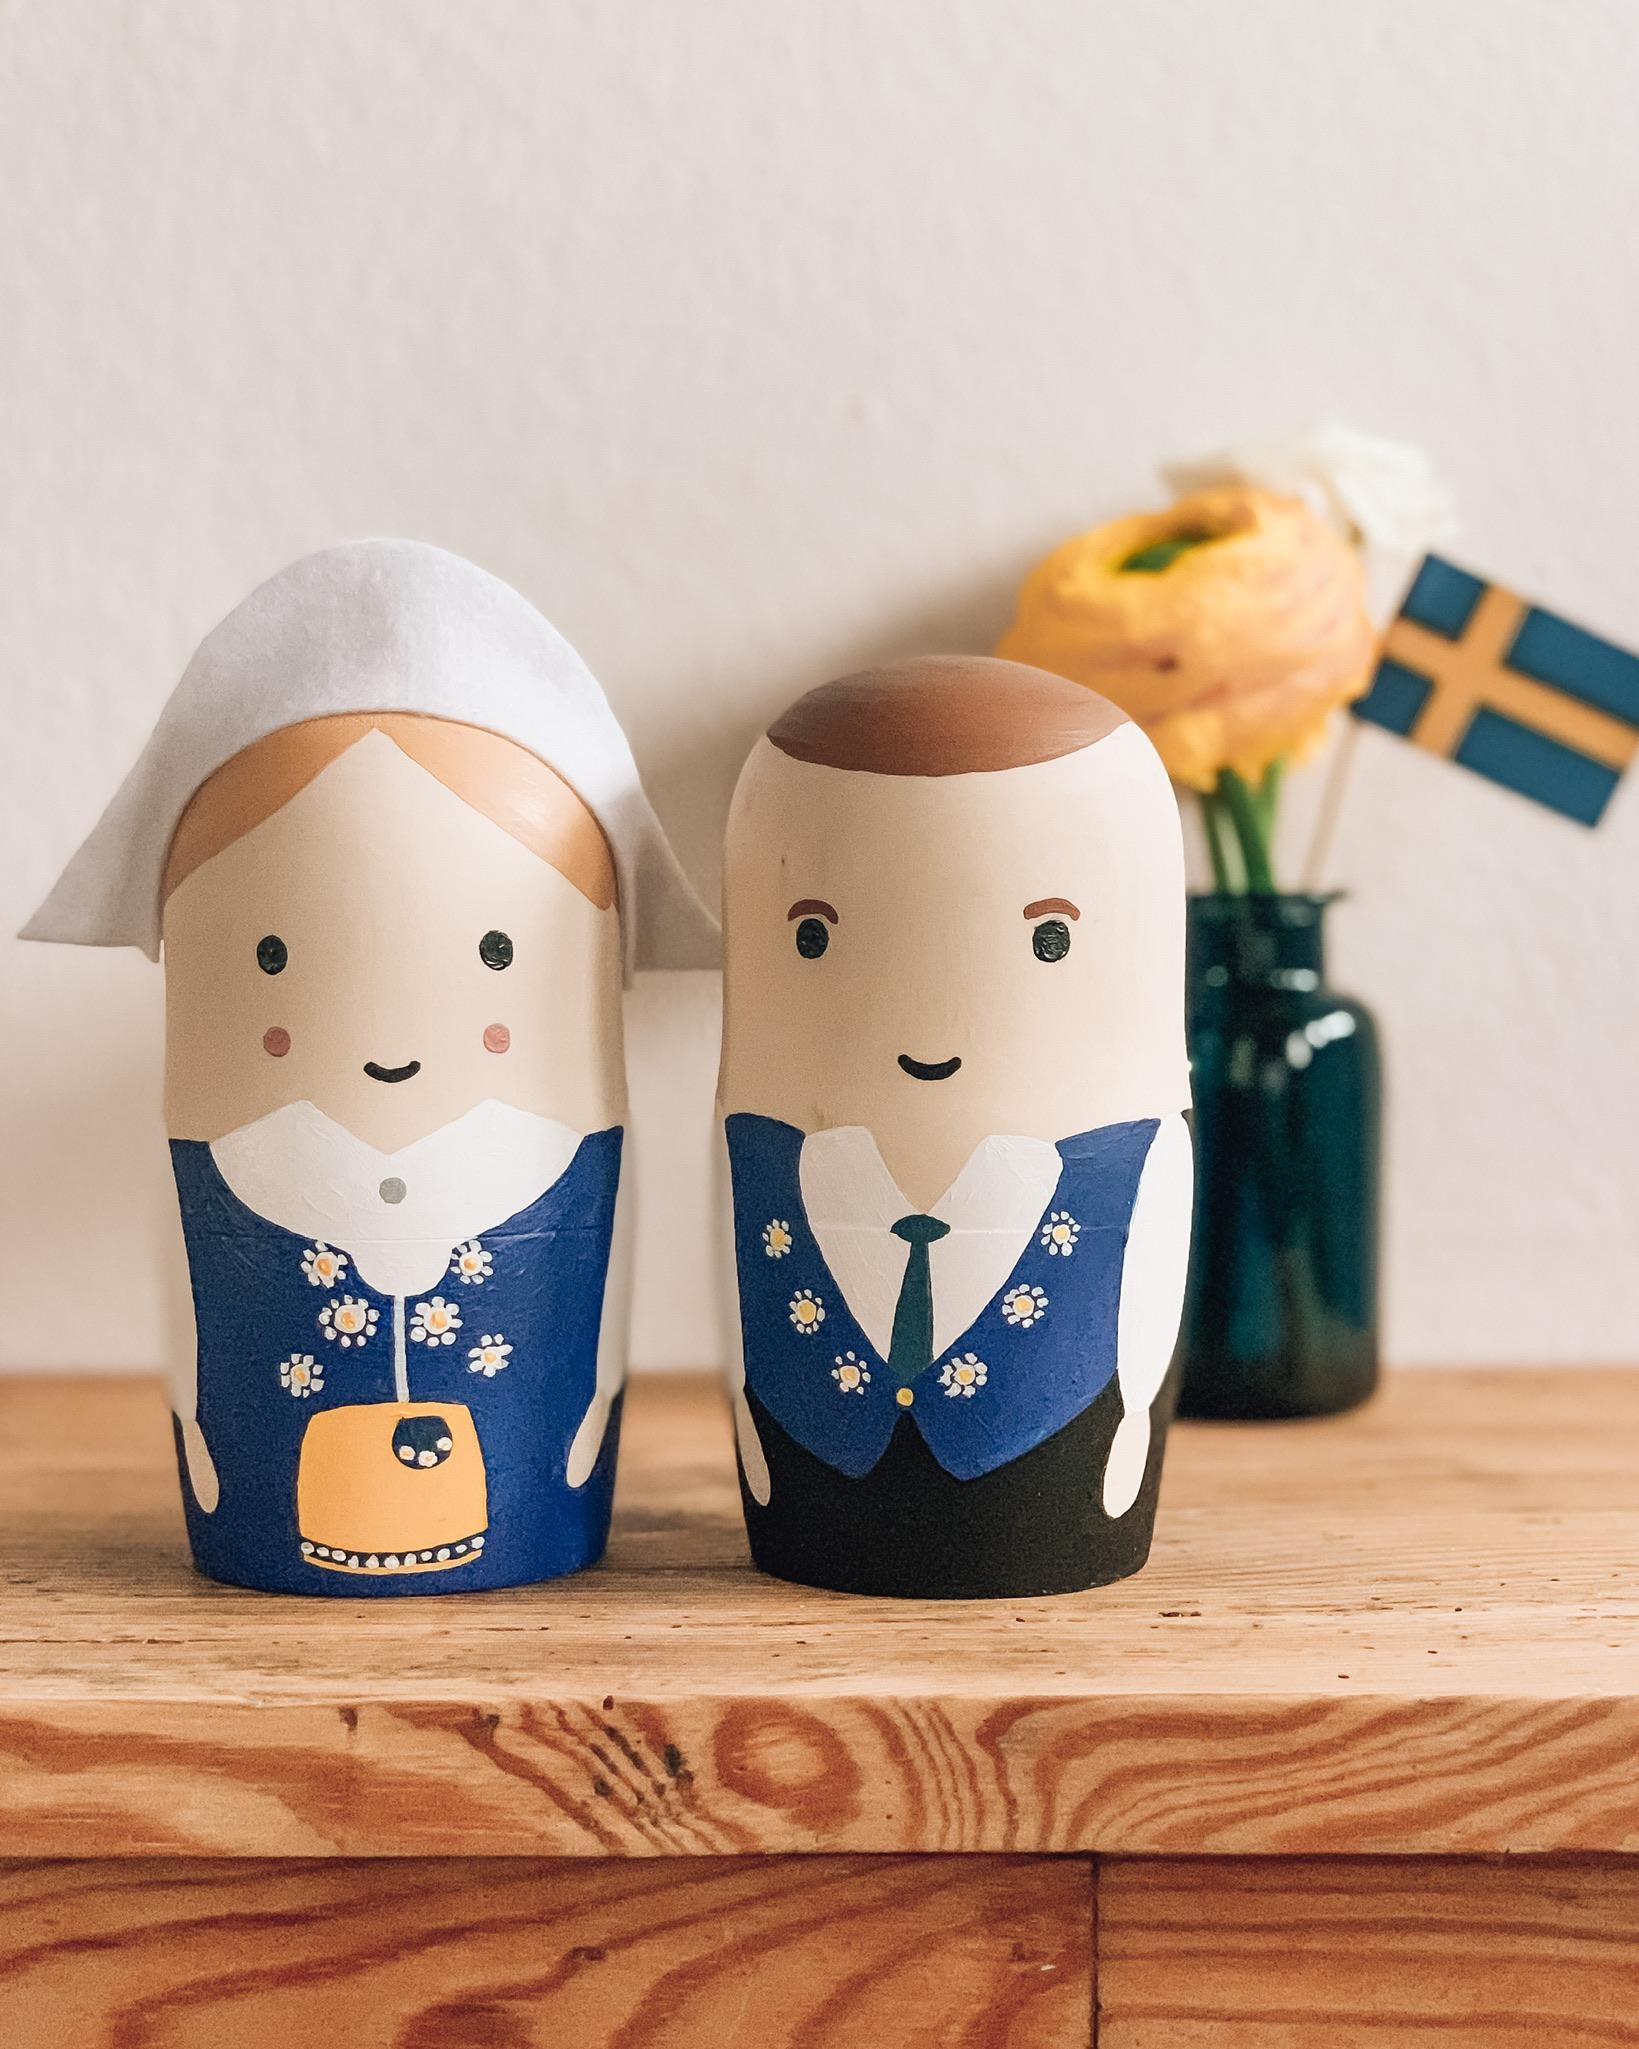 Meine kleine Hommage an alle lieben Schweden 🇸🇪 #diy #Matryoshkas